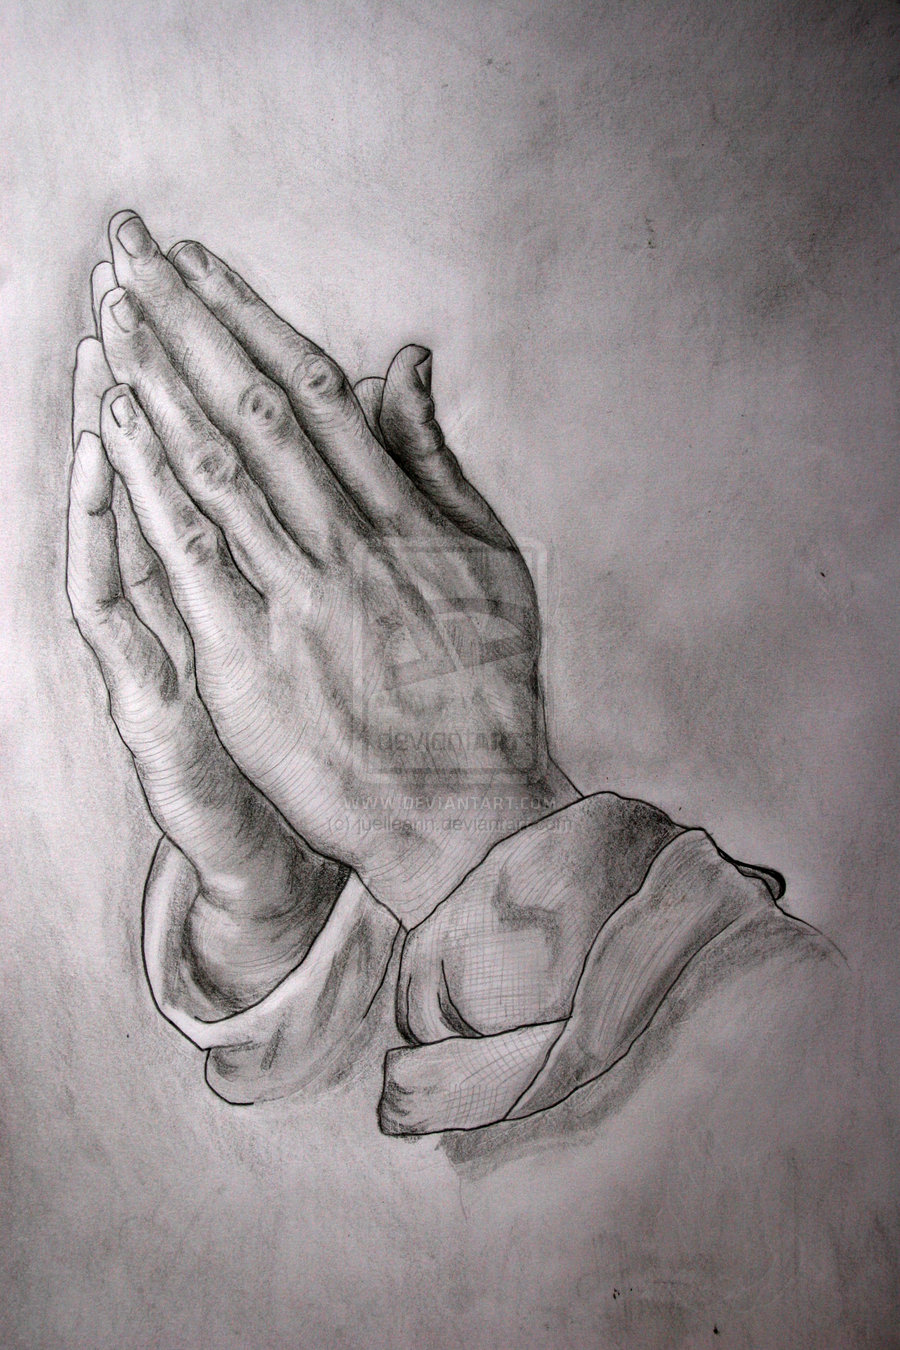 prayer hands wallpaper hd - Clip Art Library